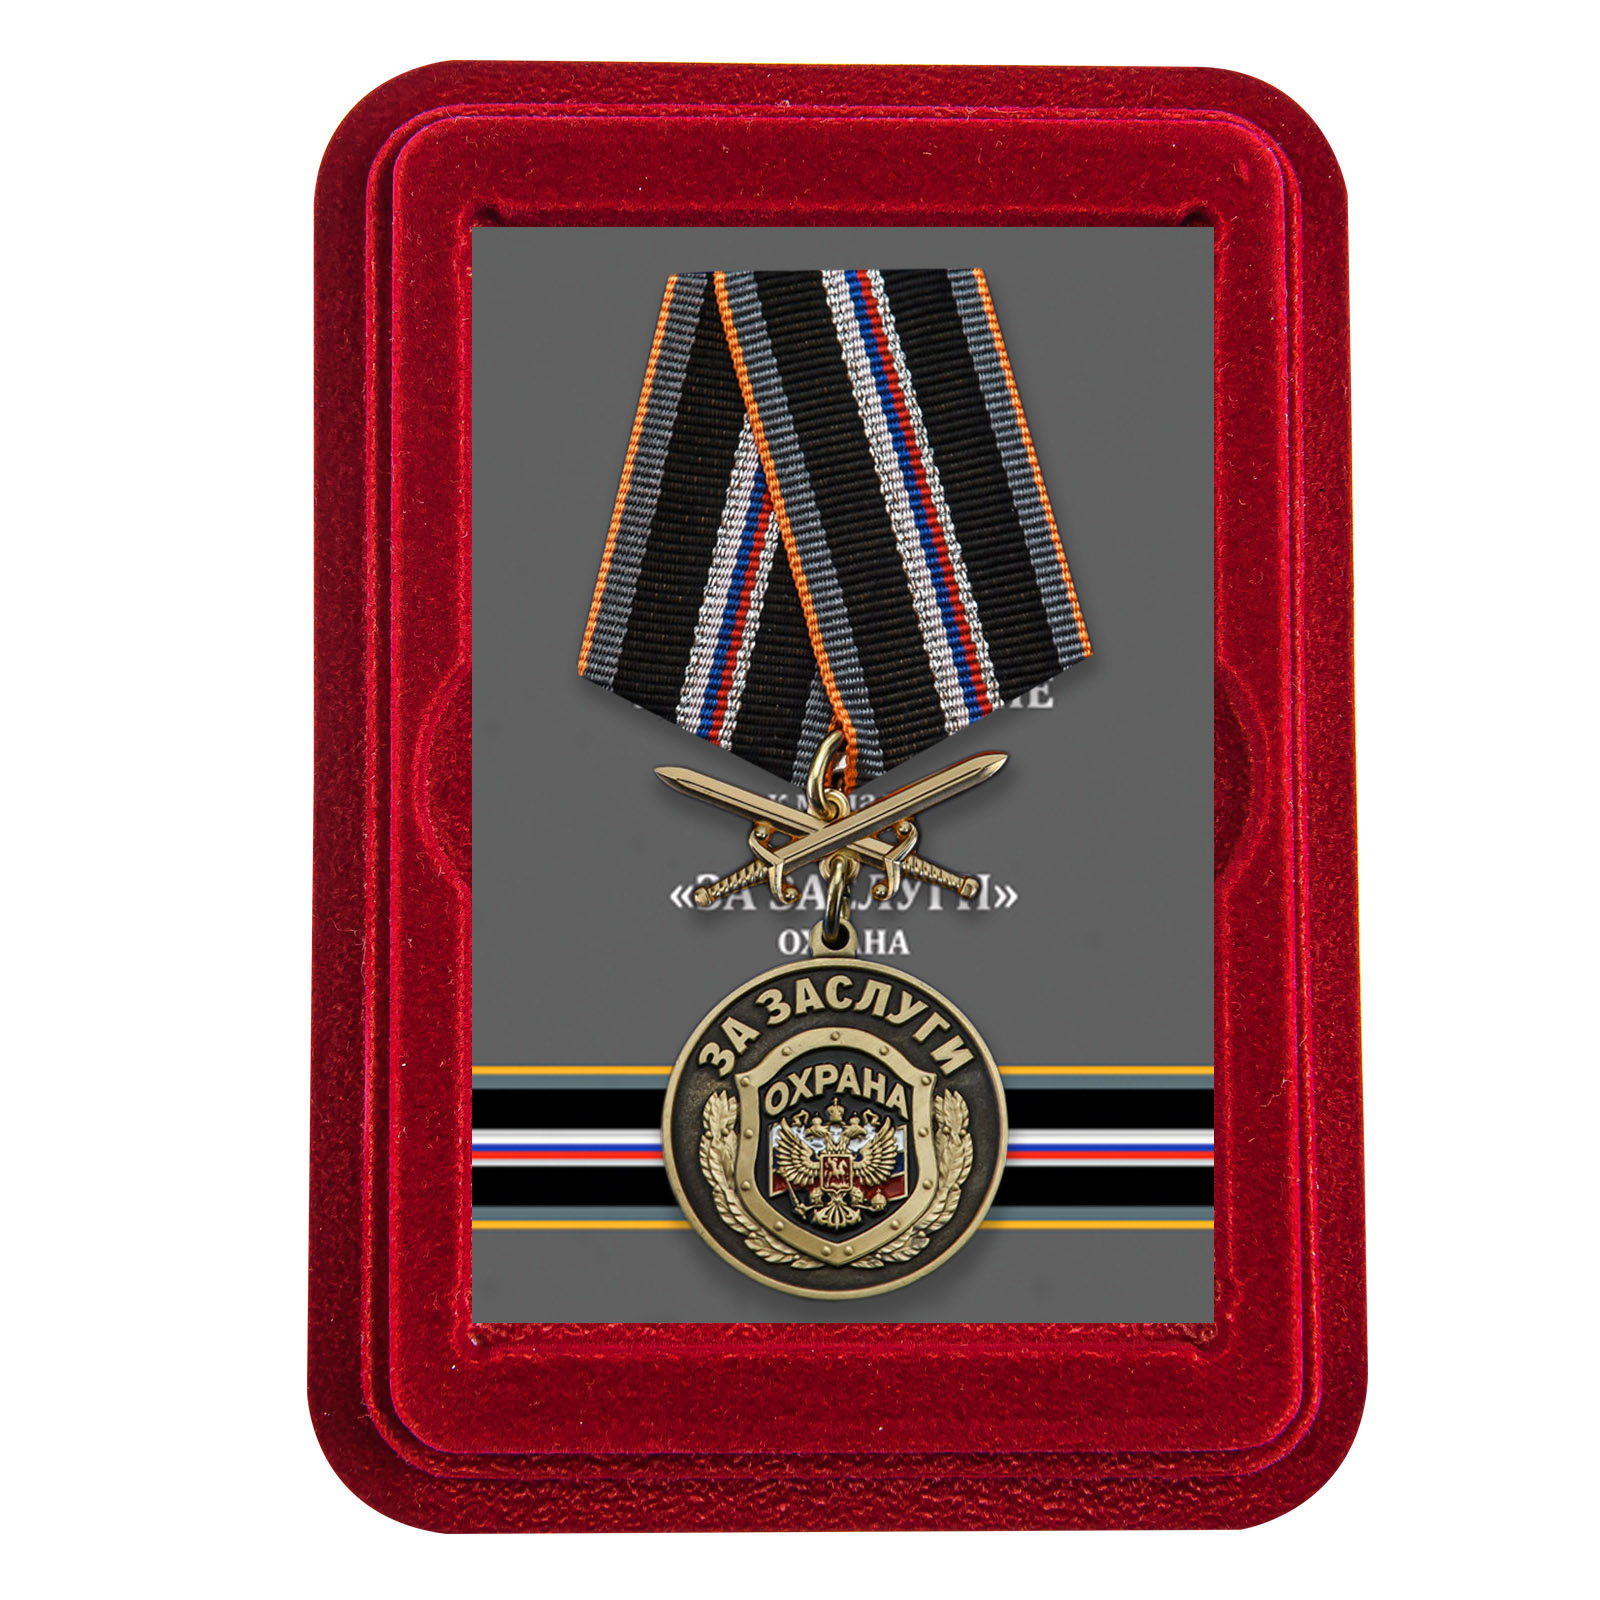 Купить медаль За заслуги Охрана по лучшей цене